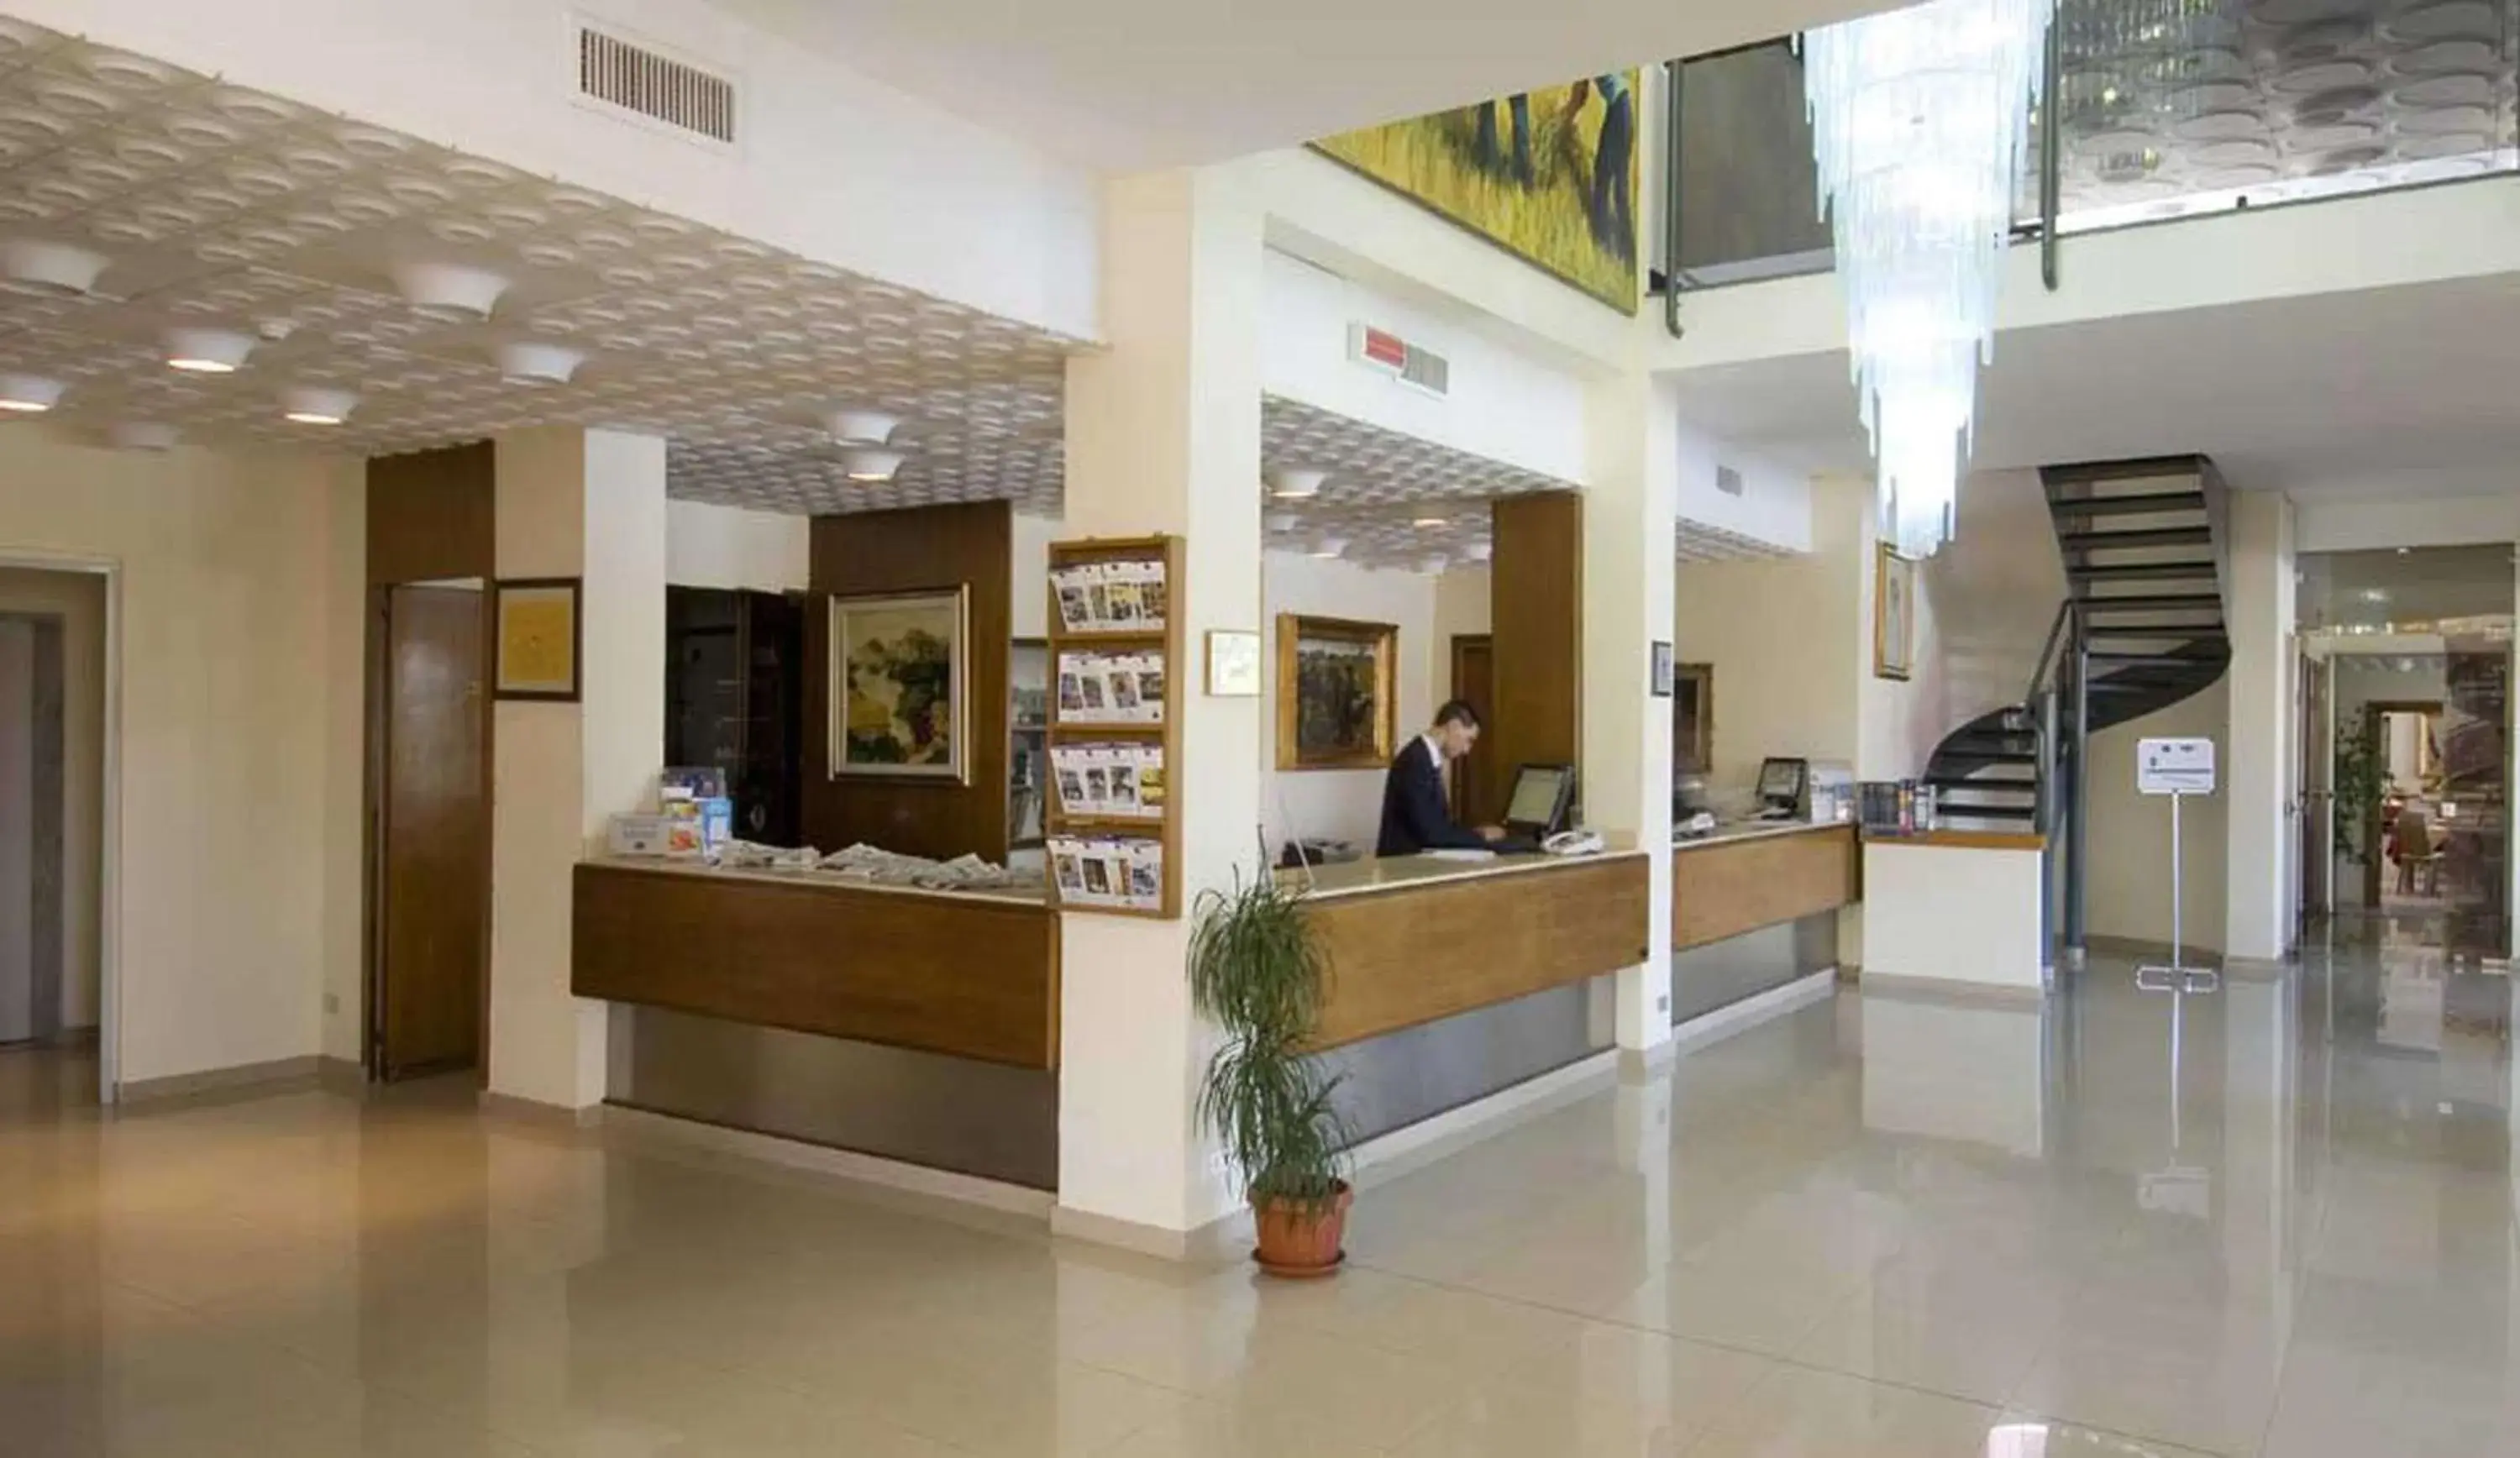 Lobby or reception, Lobby/Reception in Hotel HR